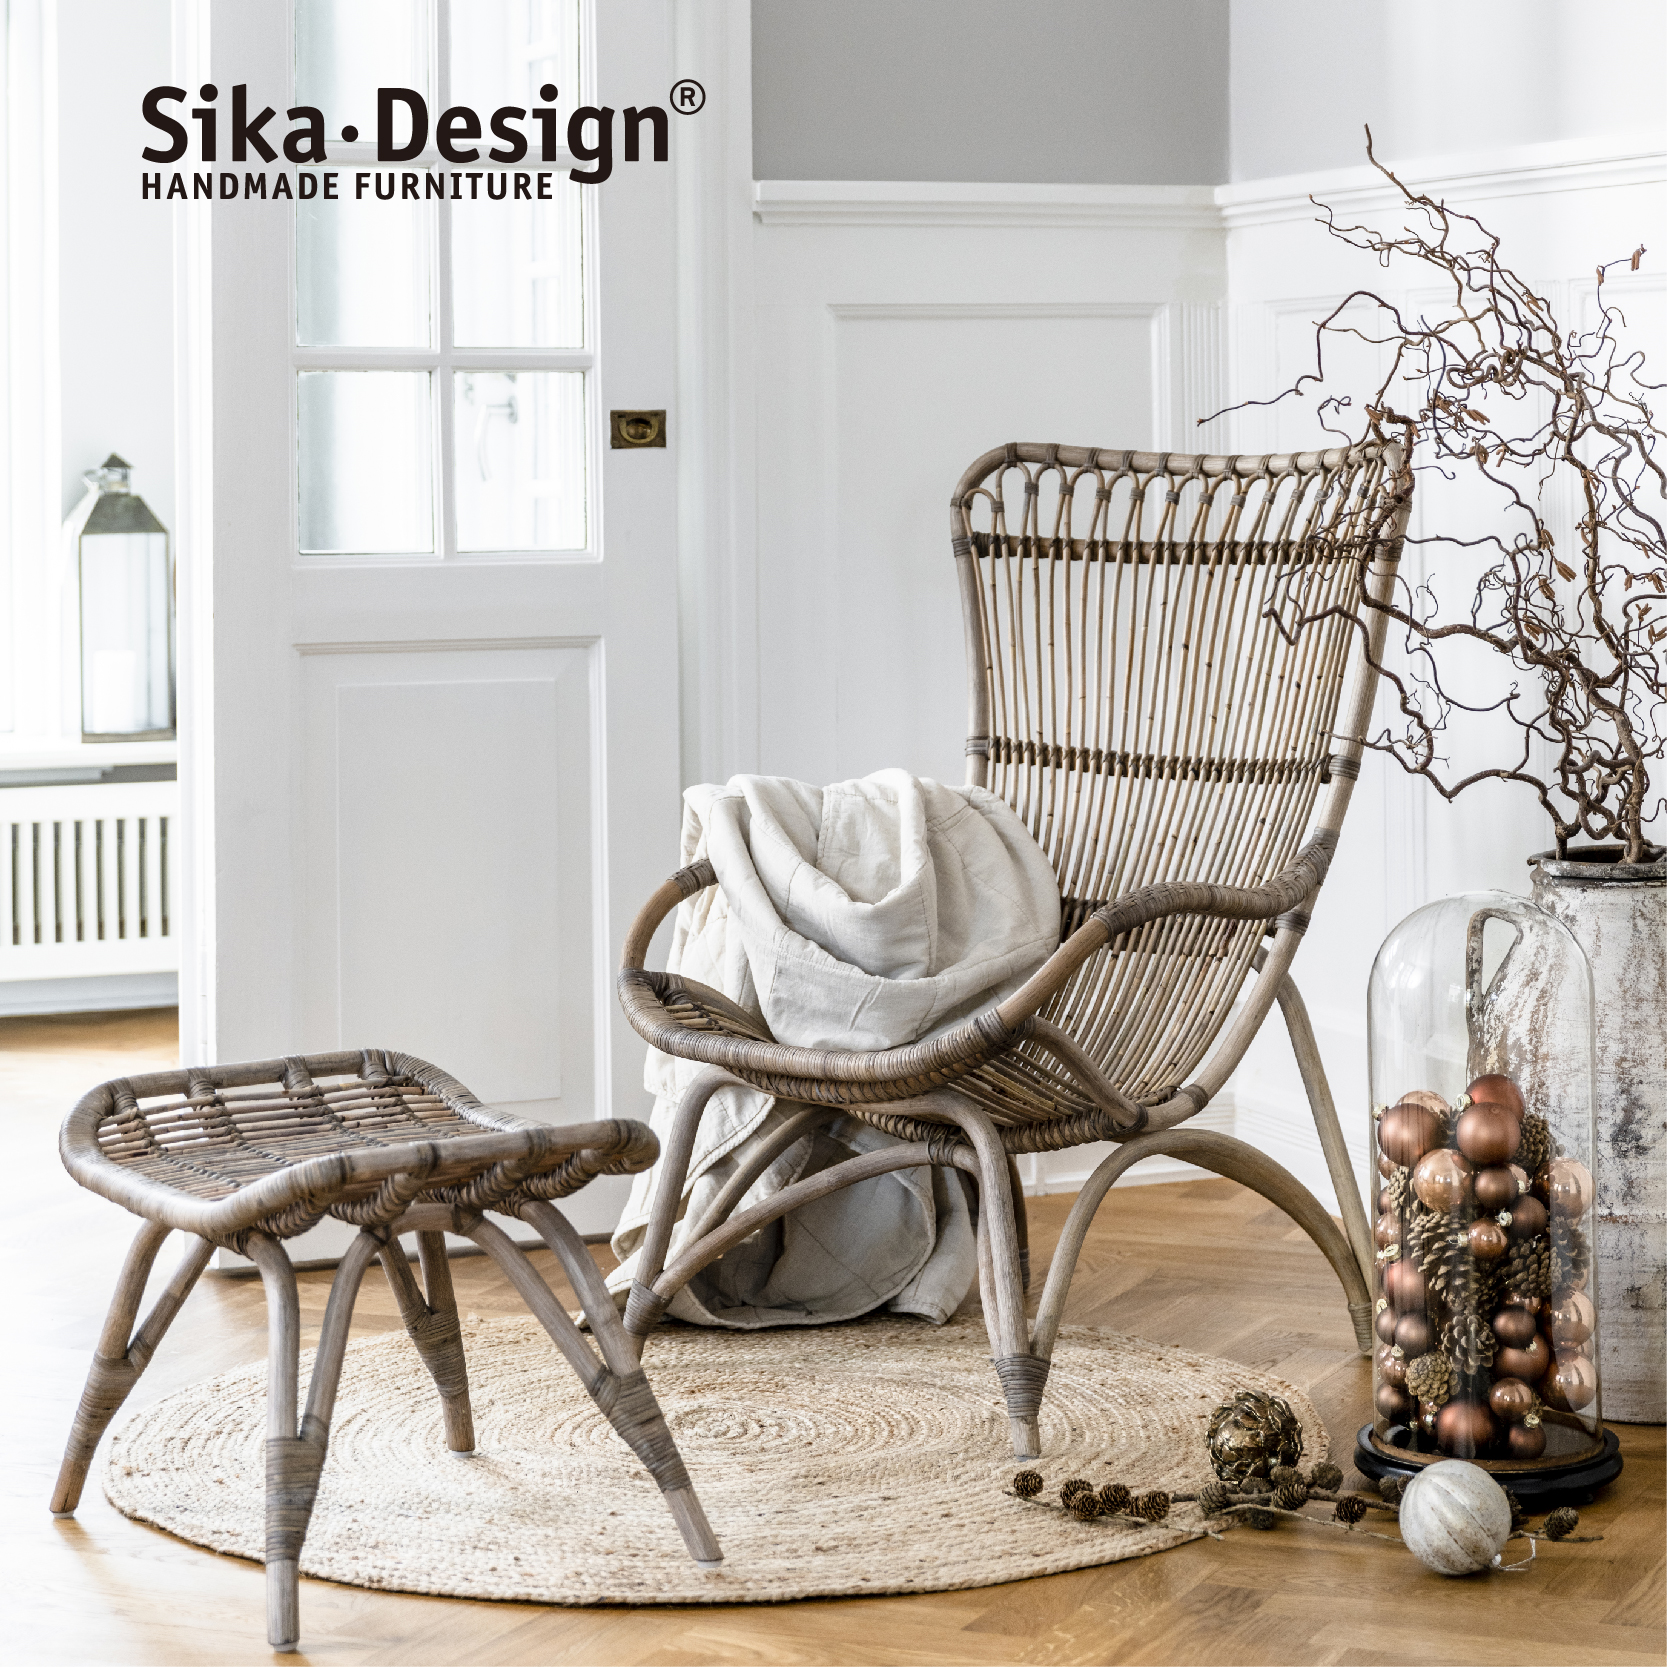 Sika design天然藤编藤椅休闲椅设计师款Monet chair丹麦进口家具